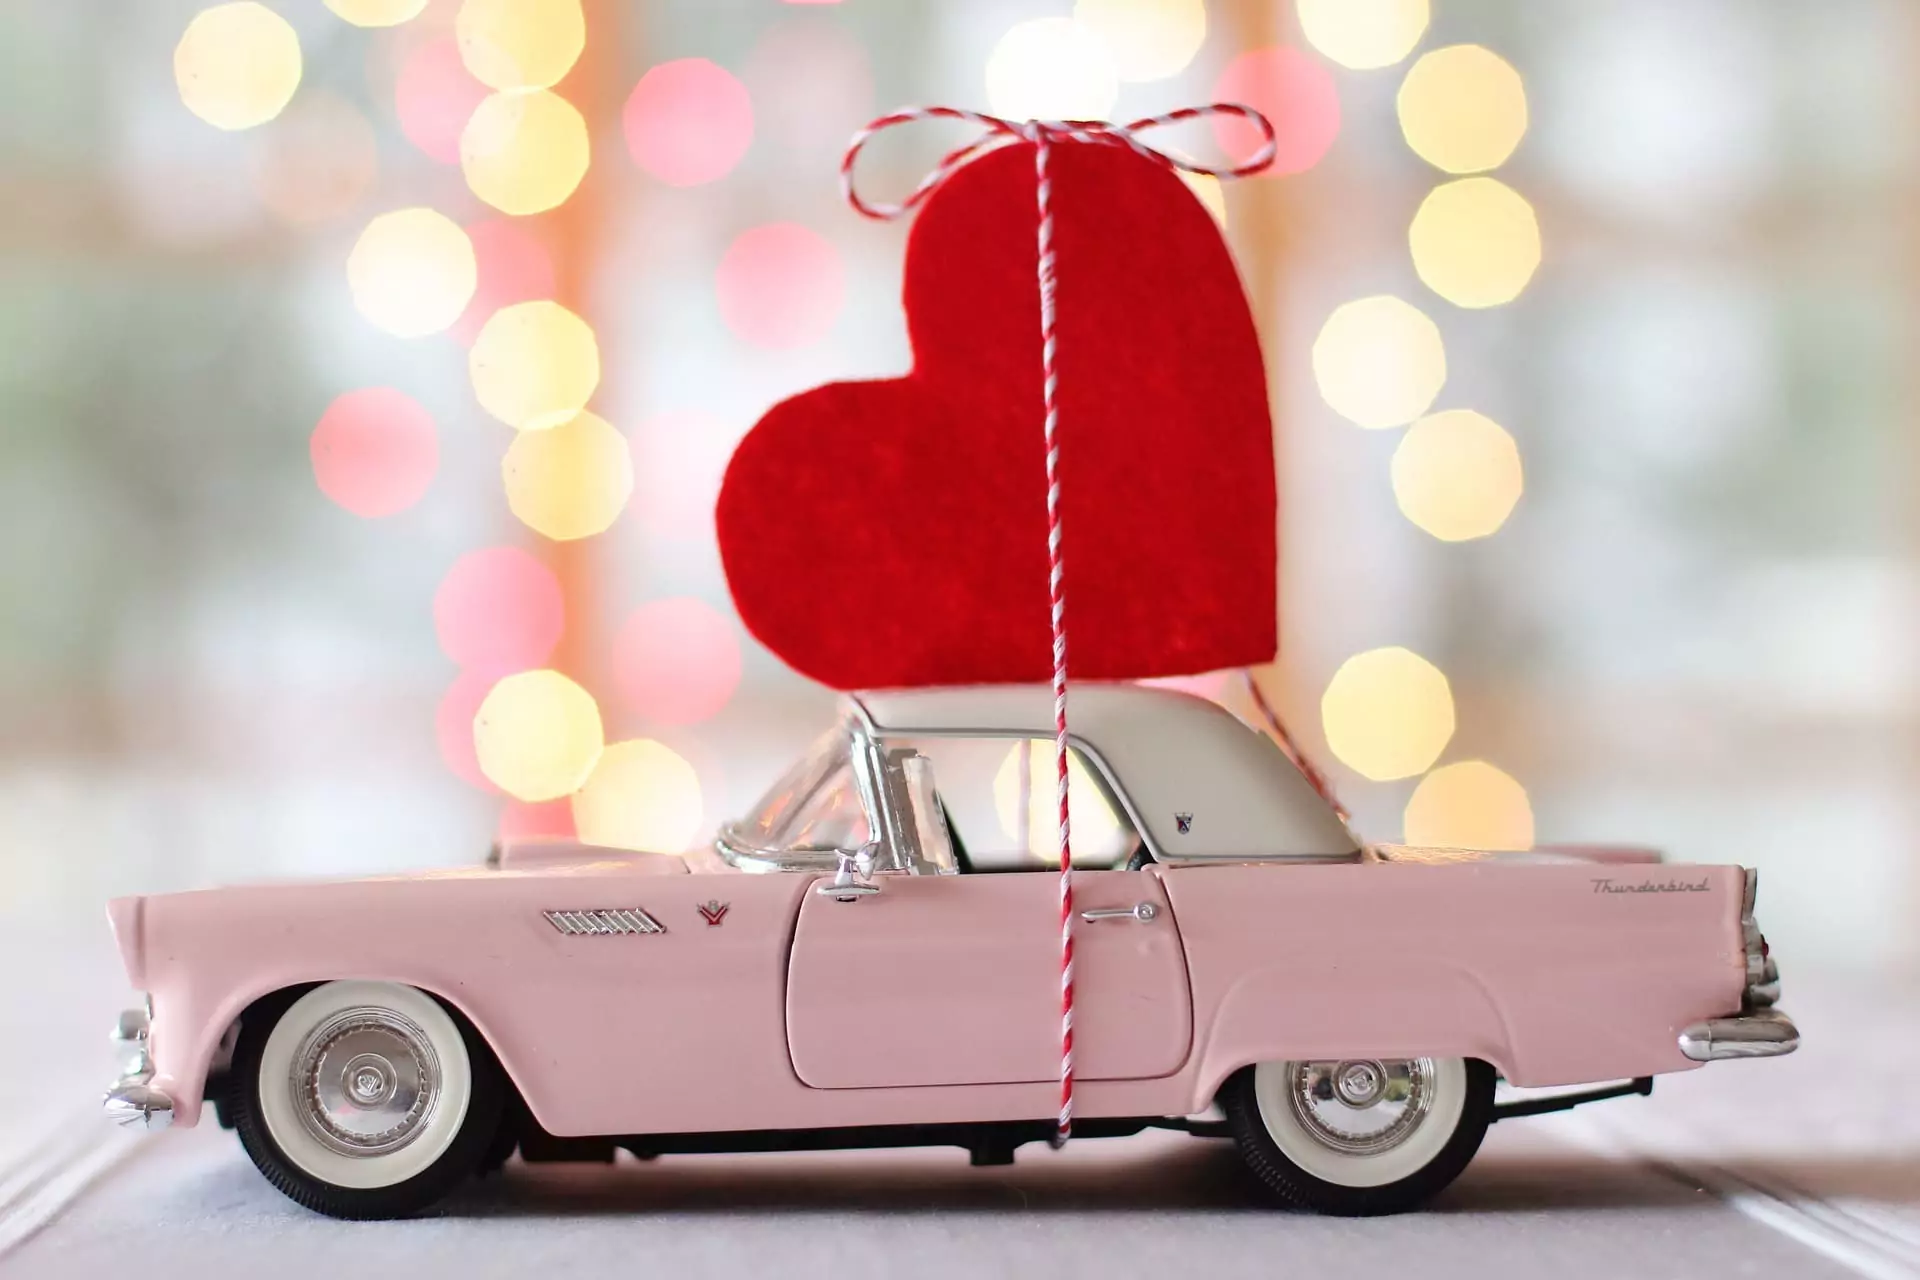 Maníacos de los coches de San Valentín. 5 ideas para San Valentín en el coche